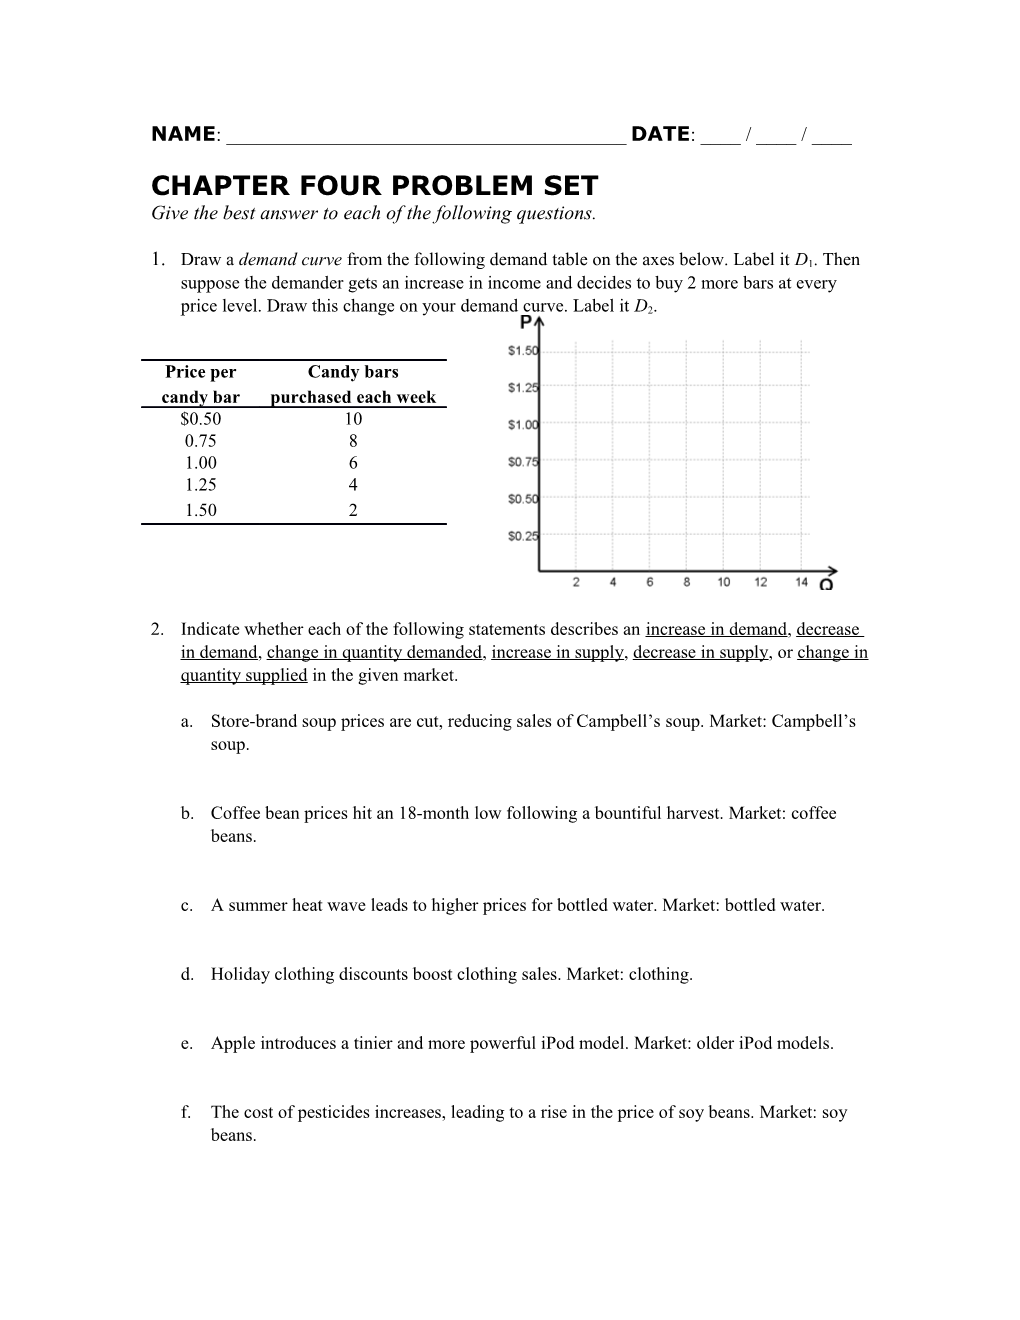 Chapter Four Problem Set